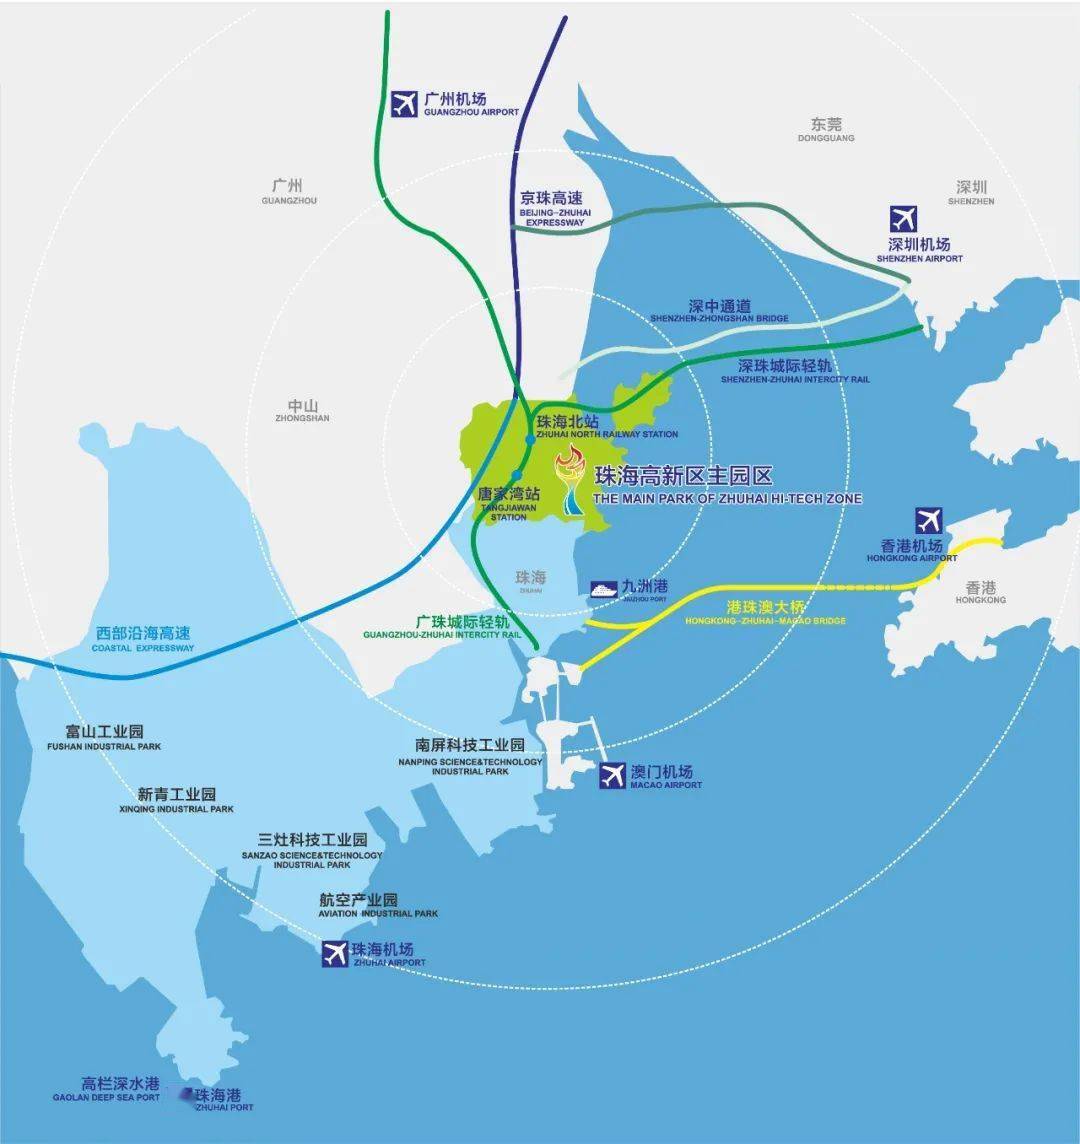 珠海高新区位于珠江三角洲几何中心,是粤港澳大湾区战略高地,商贸往来